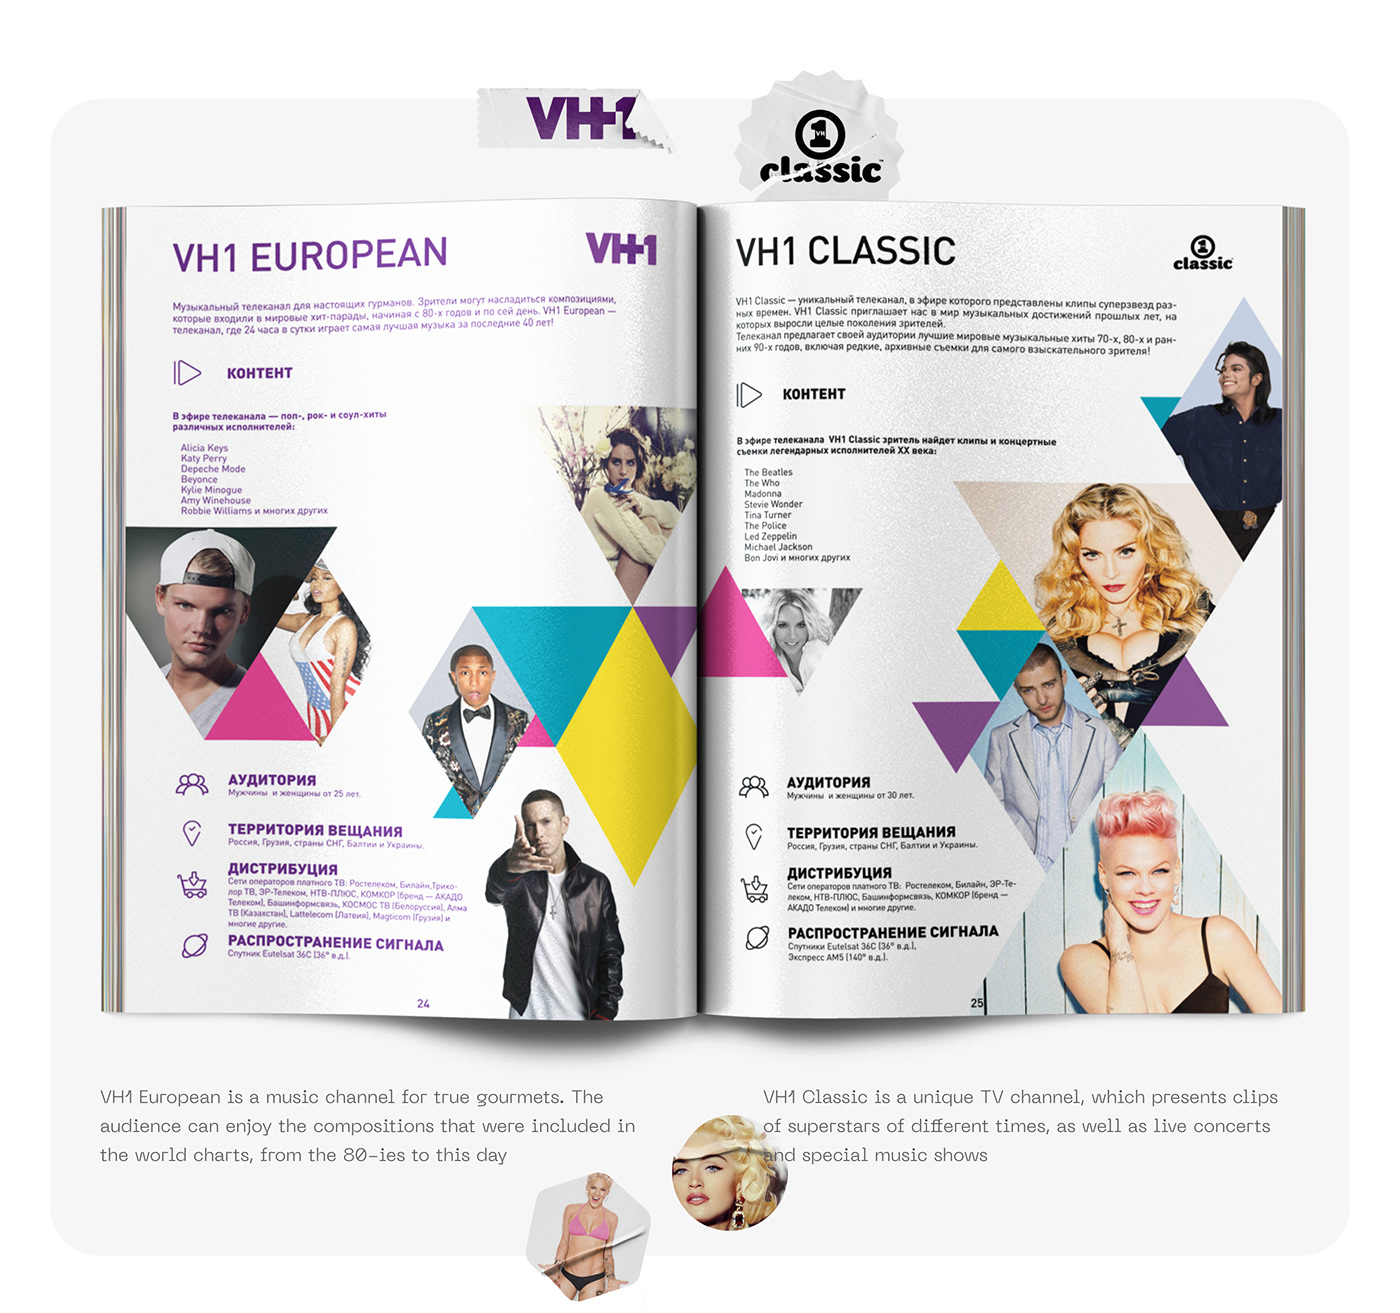 #viacom #mtv #paramount #catalogue   #Brochure #vimn #fargo #Branding #publishing 